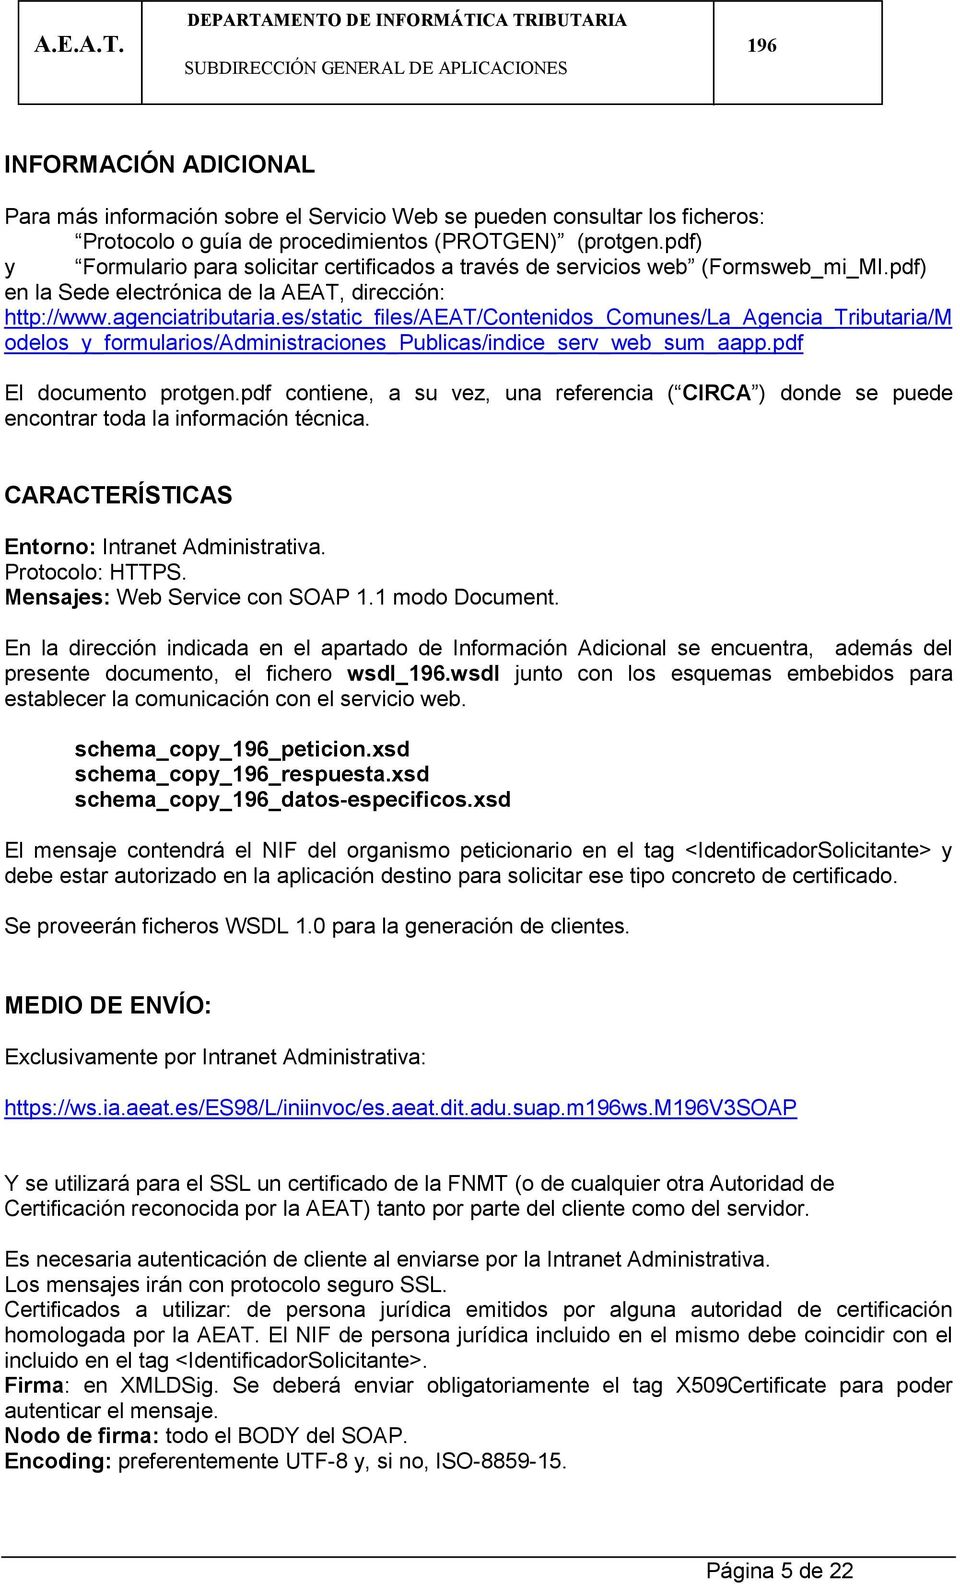 es/static_files/aeat/contenidos_comunes/la_agencia_tributaria/m odelos_y_formularios/administraciones_publicas/indice_serv_web_sum_aapp.pdf El documento protgen.